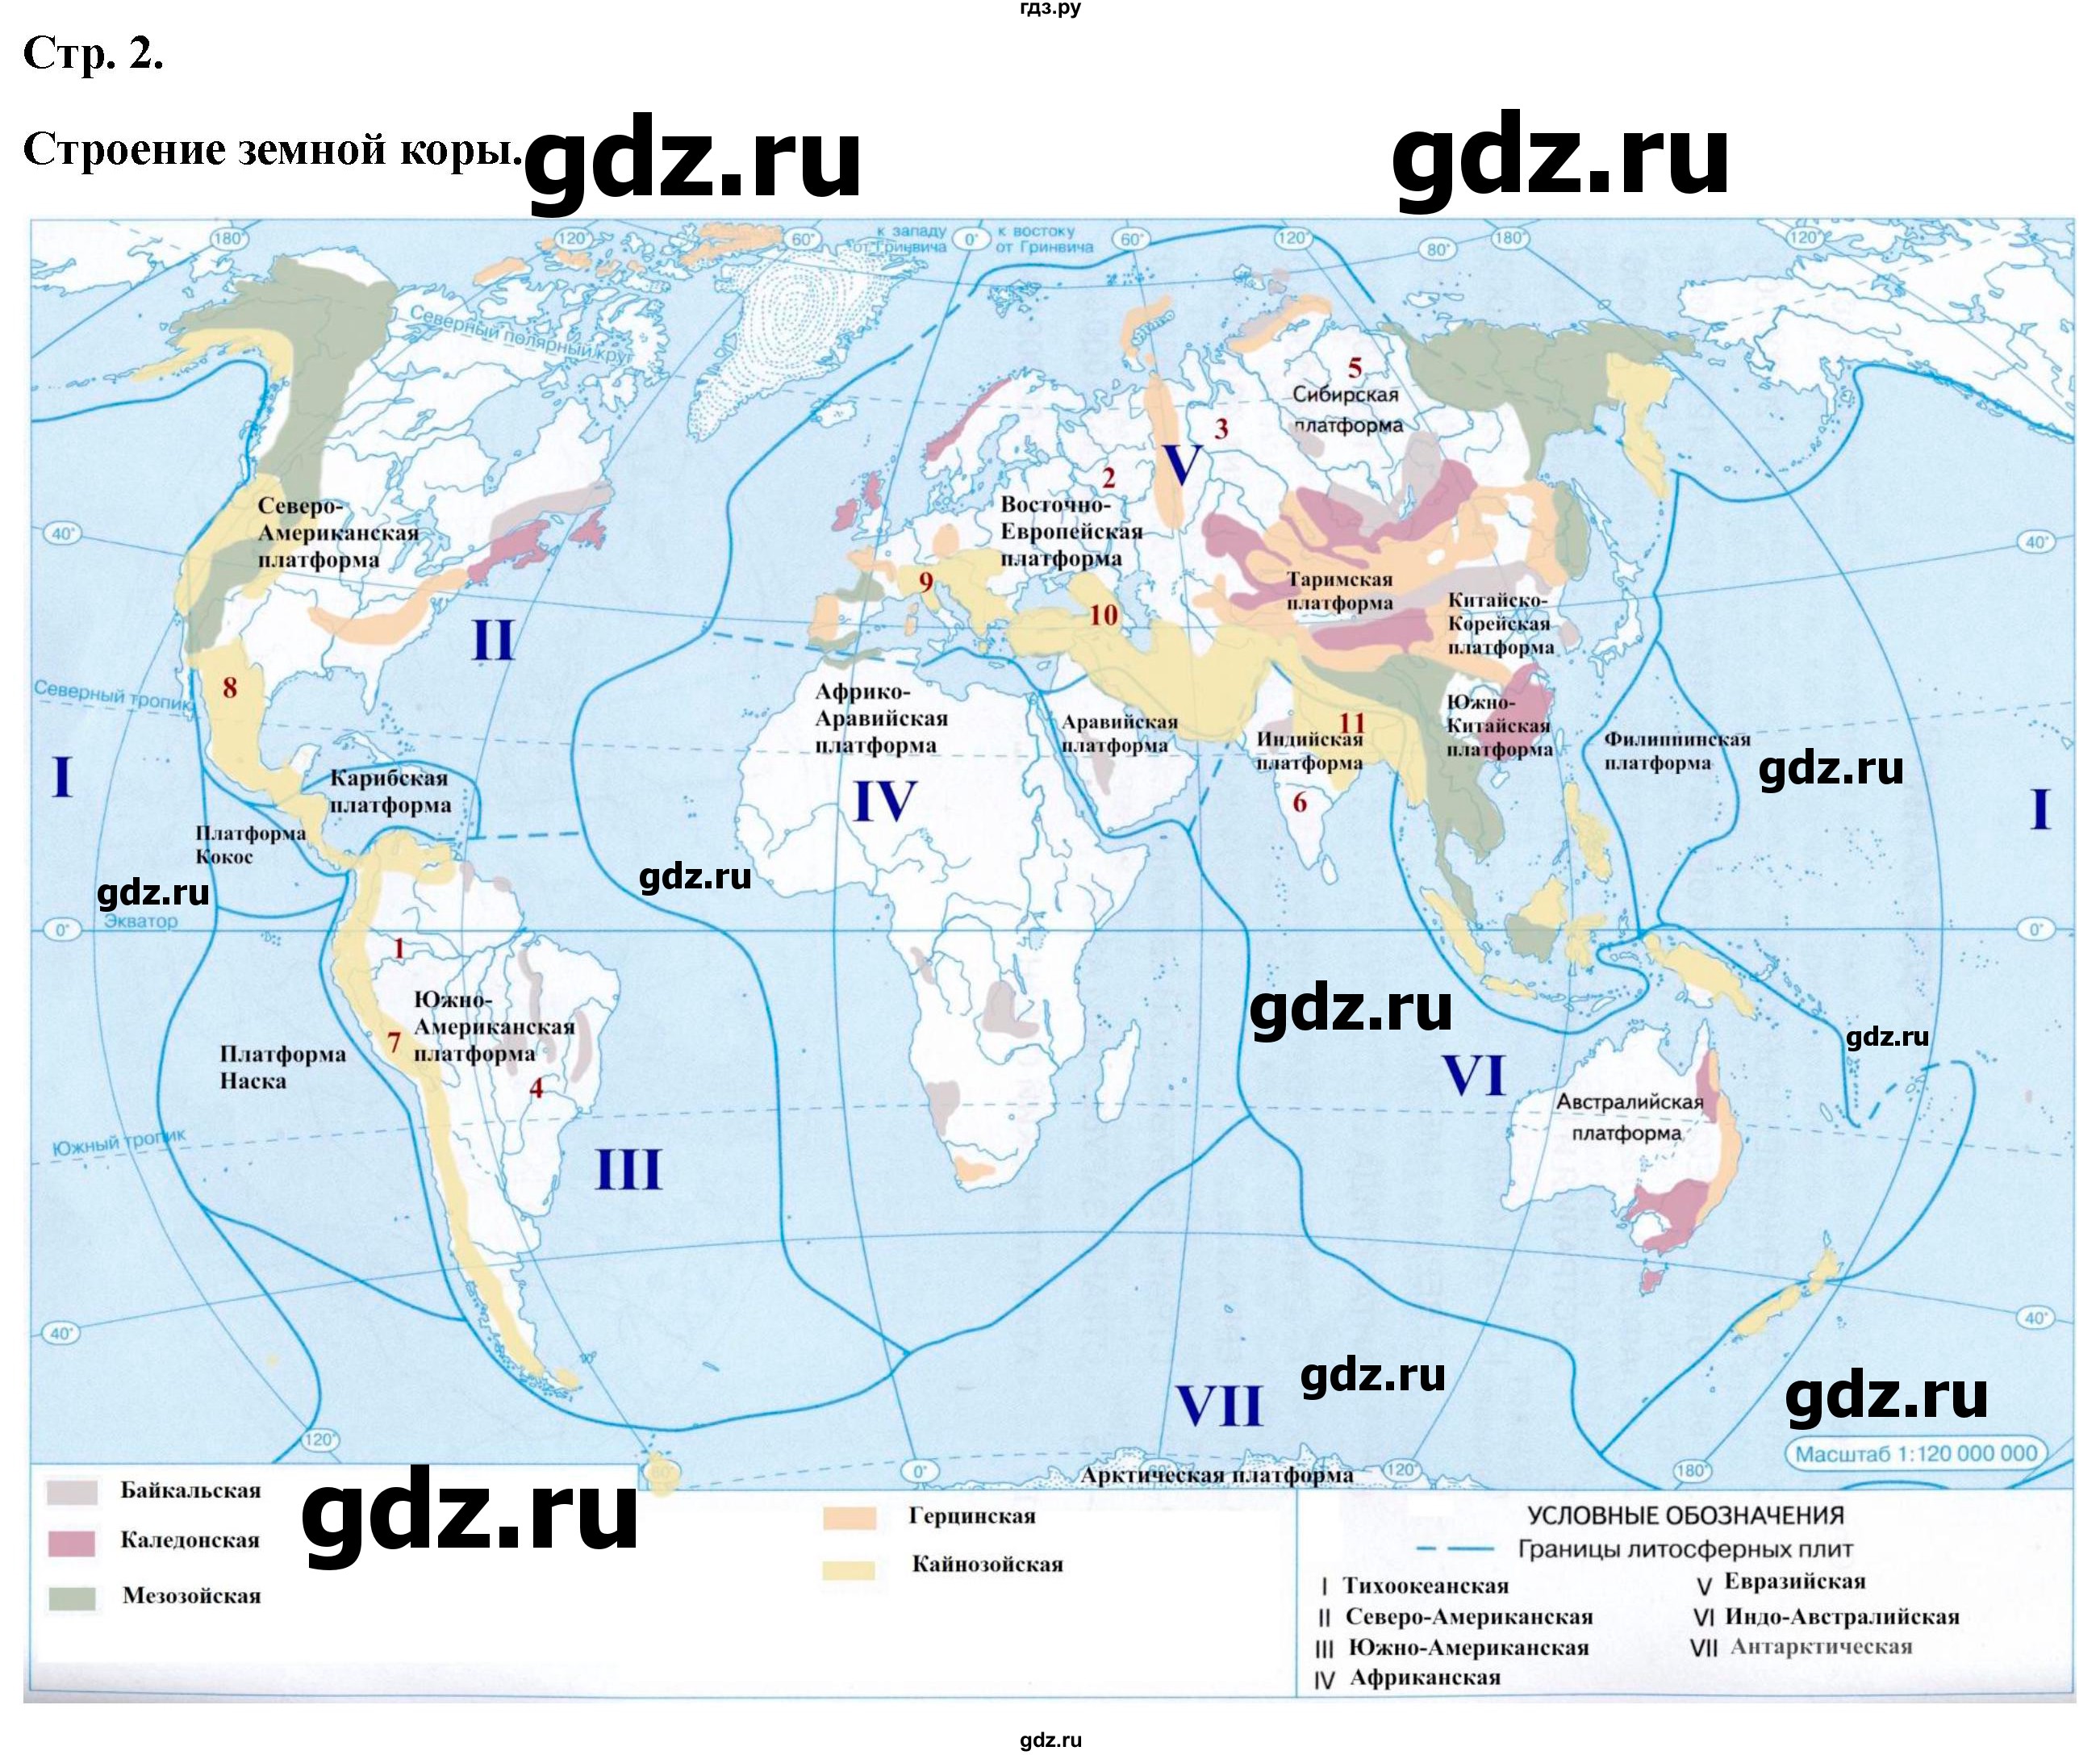 ГДЗ контурные карты стр.2 география 7 класс атлас с контурными картамиКурбский